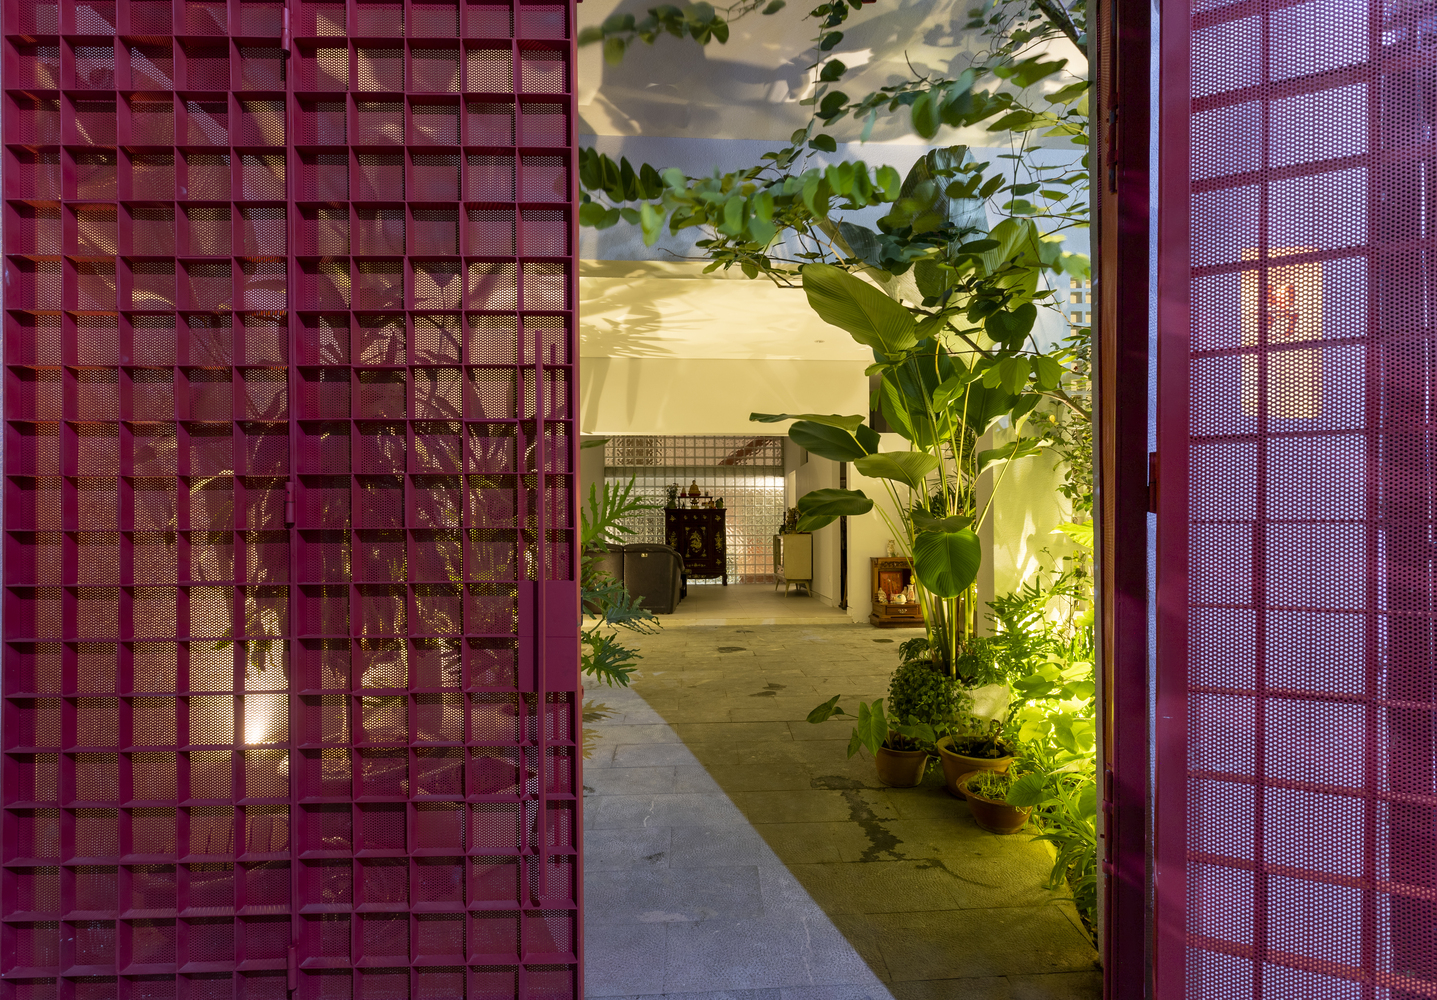 Kiến trúc sư Phạm Đức Minh cho biết, mong muốn của khách hàng là tạo ra một không gian nhà ở gần gũi và yên tĩnh, phù hợp với khí hậu nhiệt đới nóng ẩm của miền Nam.